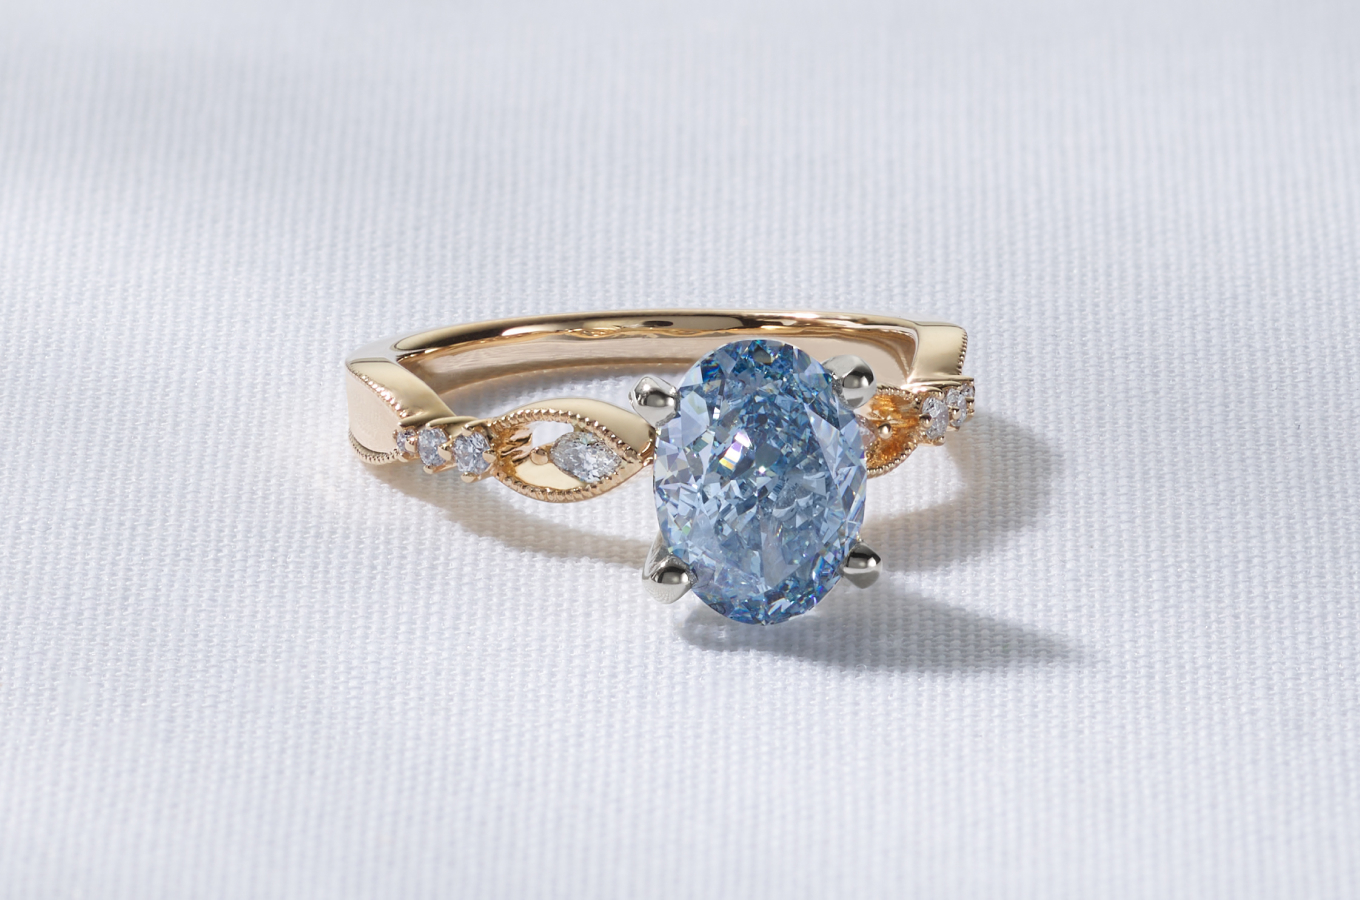 An oval cut fancy blue lab-grown diamond set in a gold ring